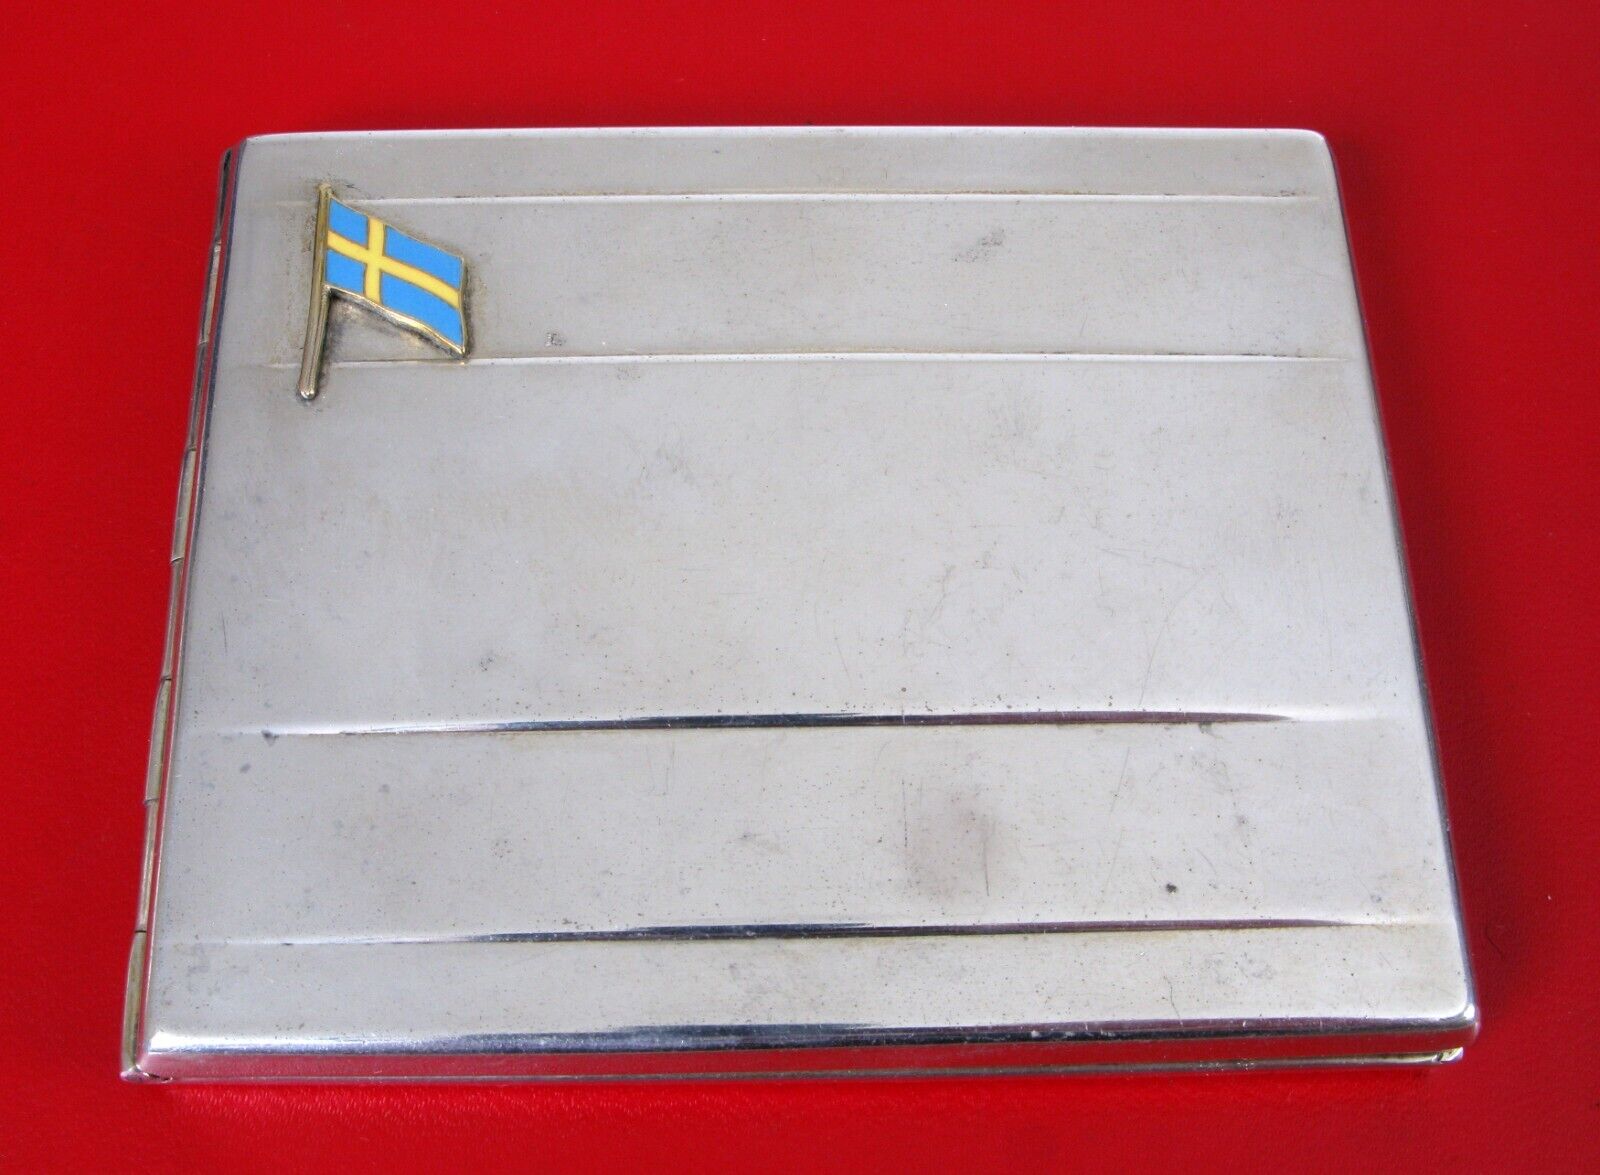 LOVELY VINTAGE SWEDEN FLAG CRUISE SHIP SOUVENIR SILVER CIGARETTE CASE RARE 